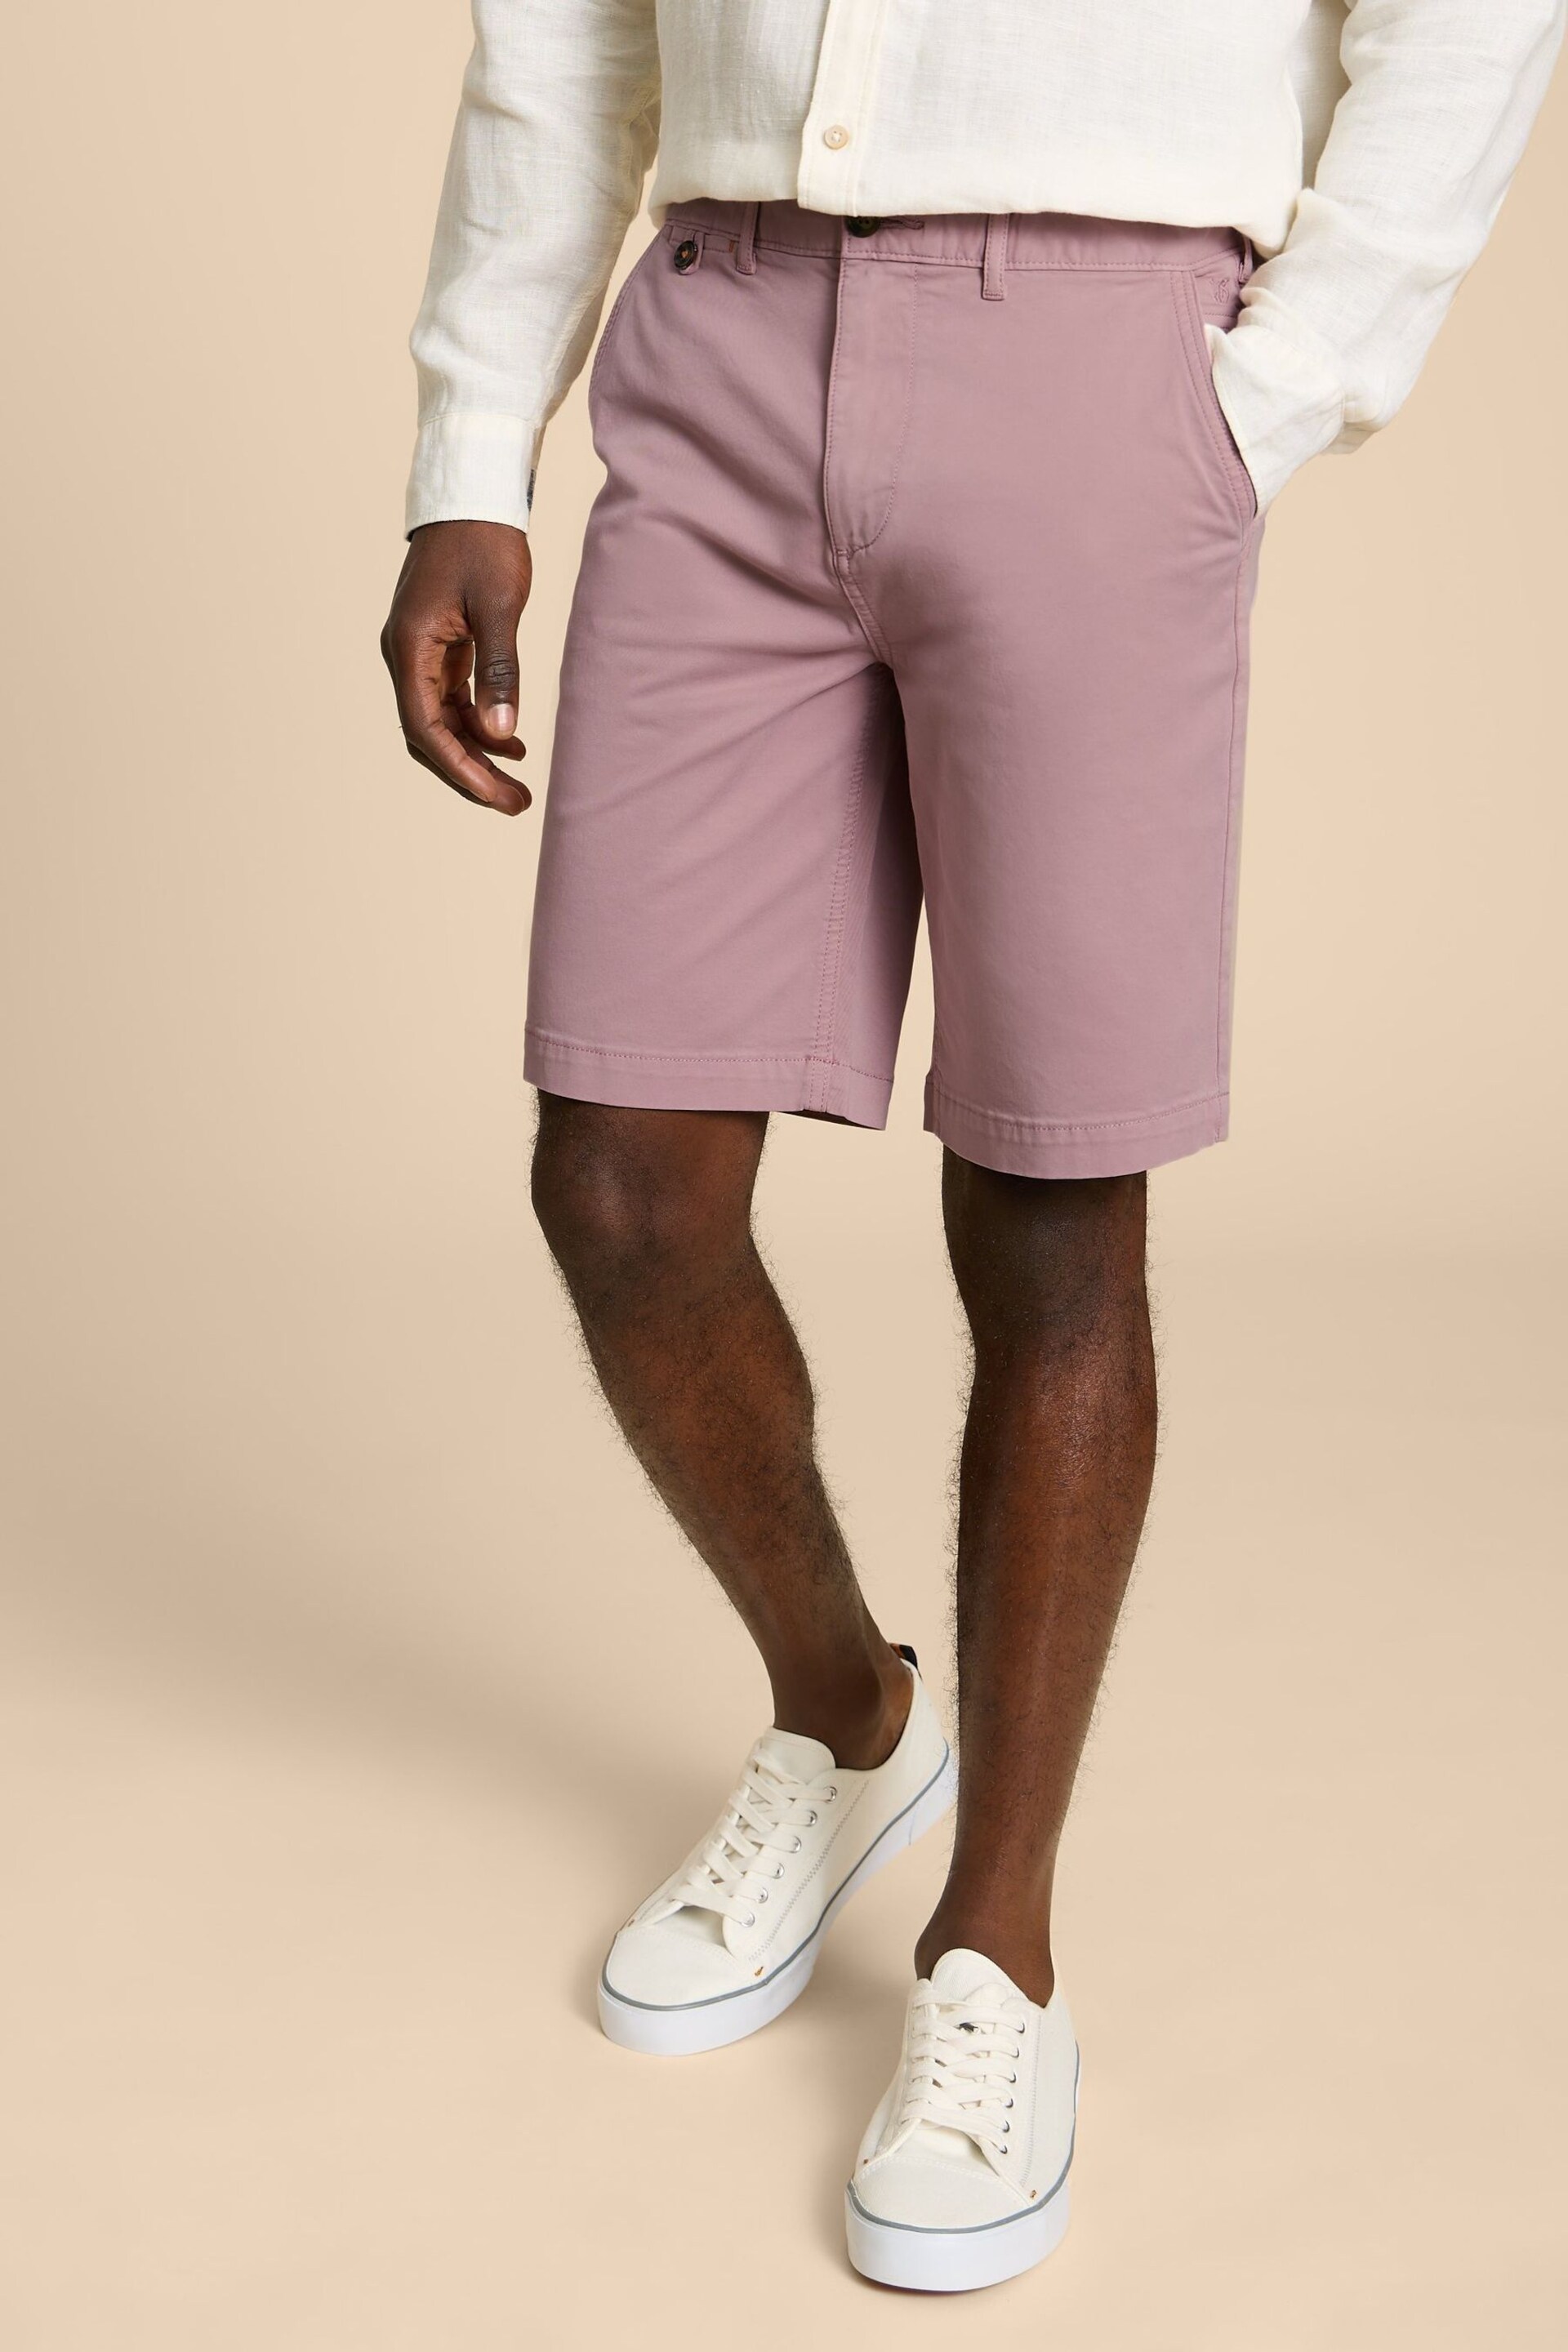 White Stuff Pink Sutton Organic Chino Shorts - Image 1 of 4